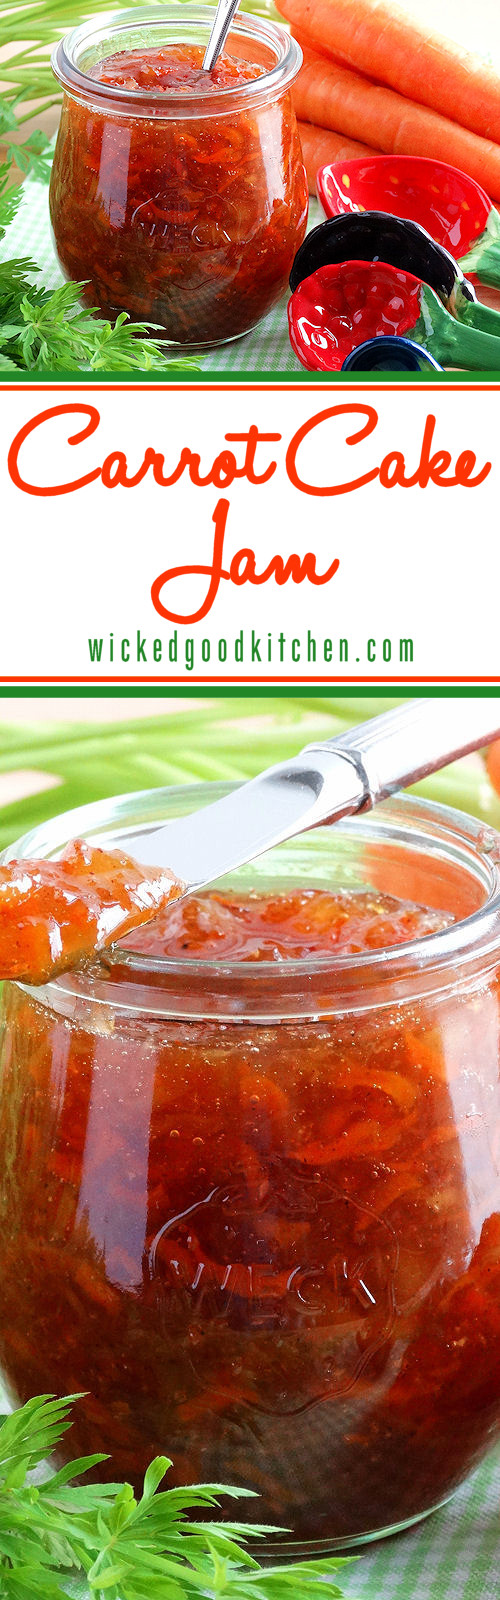 Carrot Cake Jam
 Carrot Cake Jam Best Ever Wicked Good Kitchen